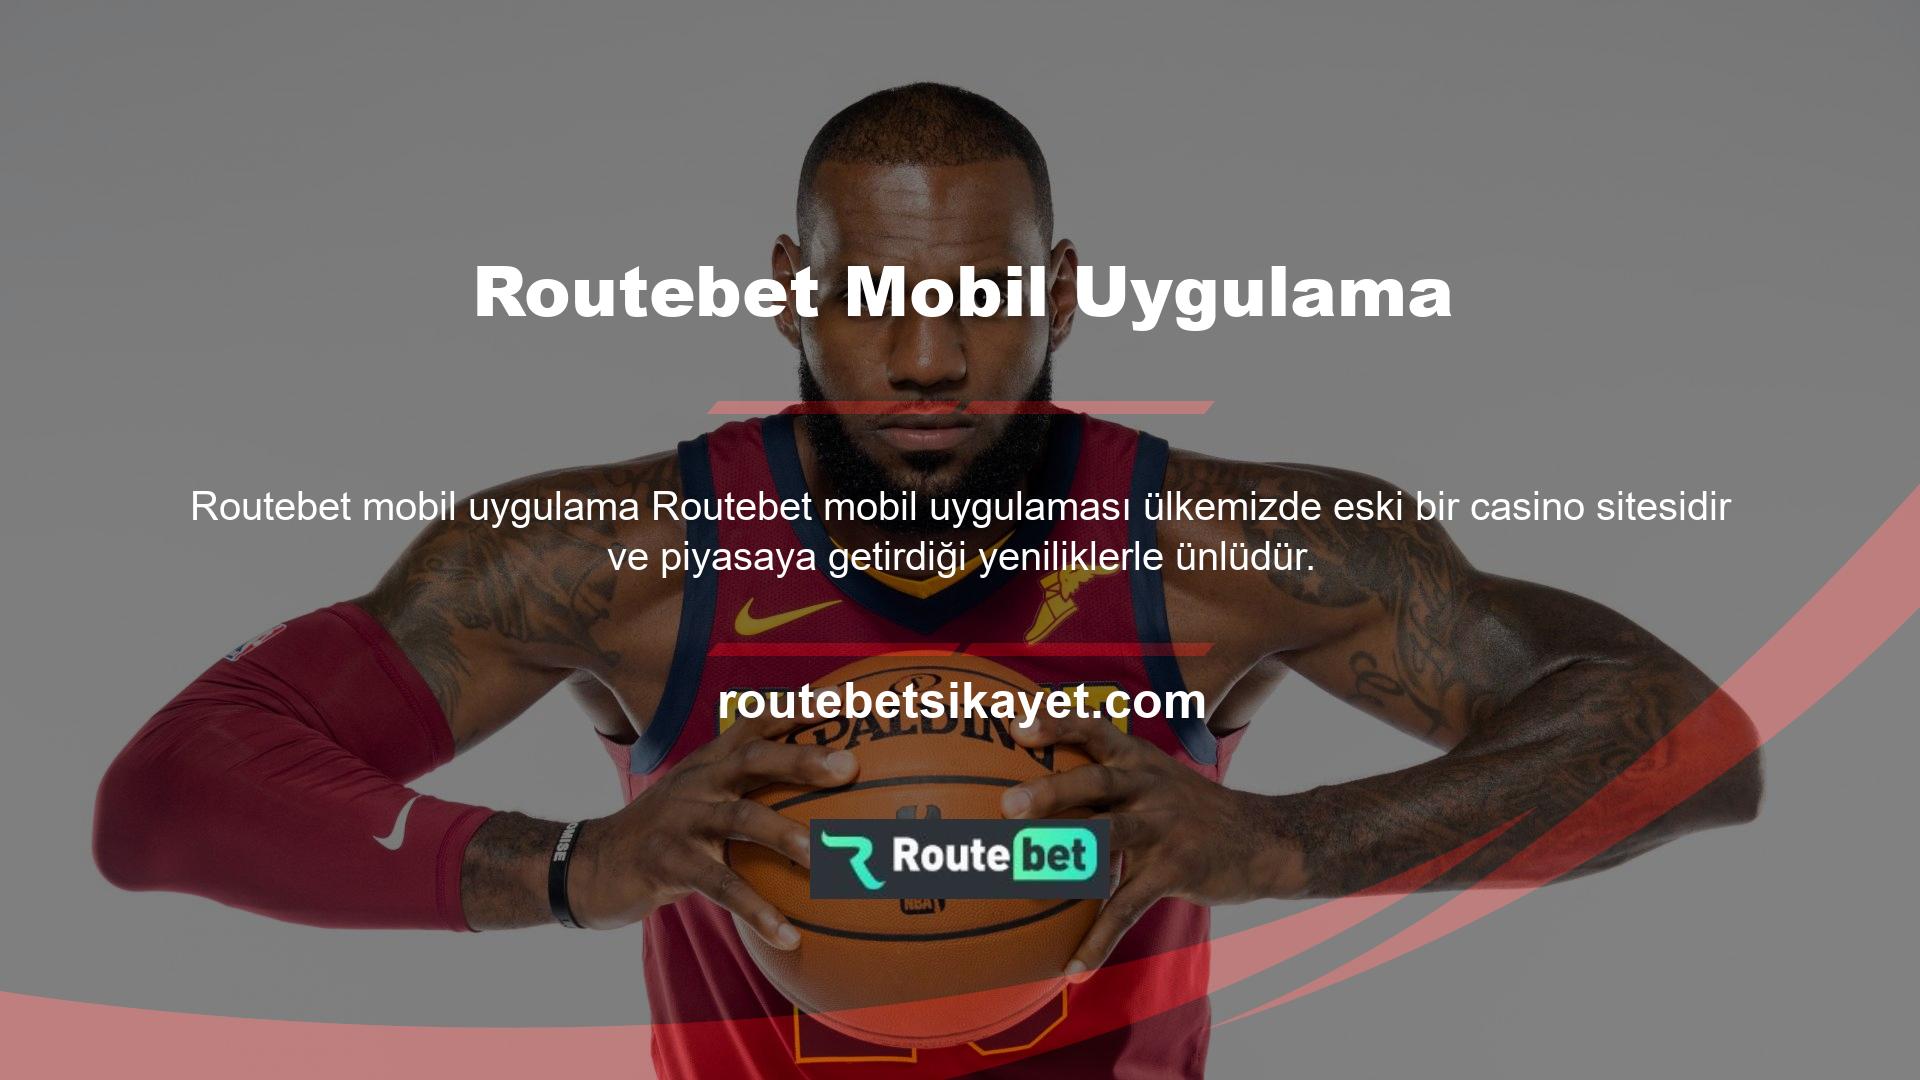 Routebet mobil uygulama bahis sitesi, özellikle sosyal medya platformlarında ve bazı bahis sitesi inceleme araçlarında pek çok olumlu yorum almış ve kullanıcılarına her zaman birkaç yıl daha yayında olacağını bildirmektedir